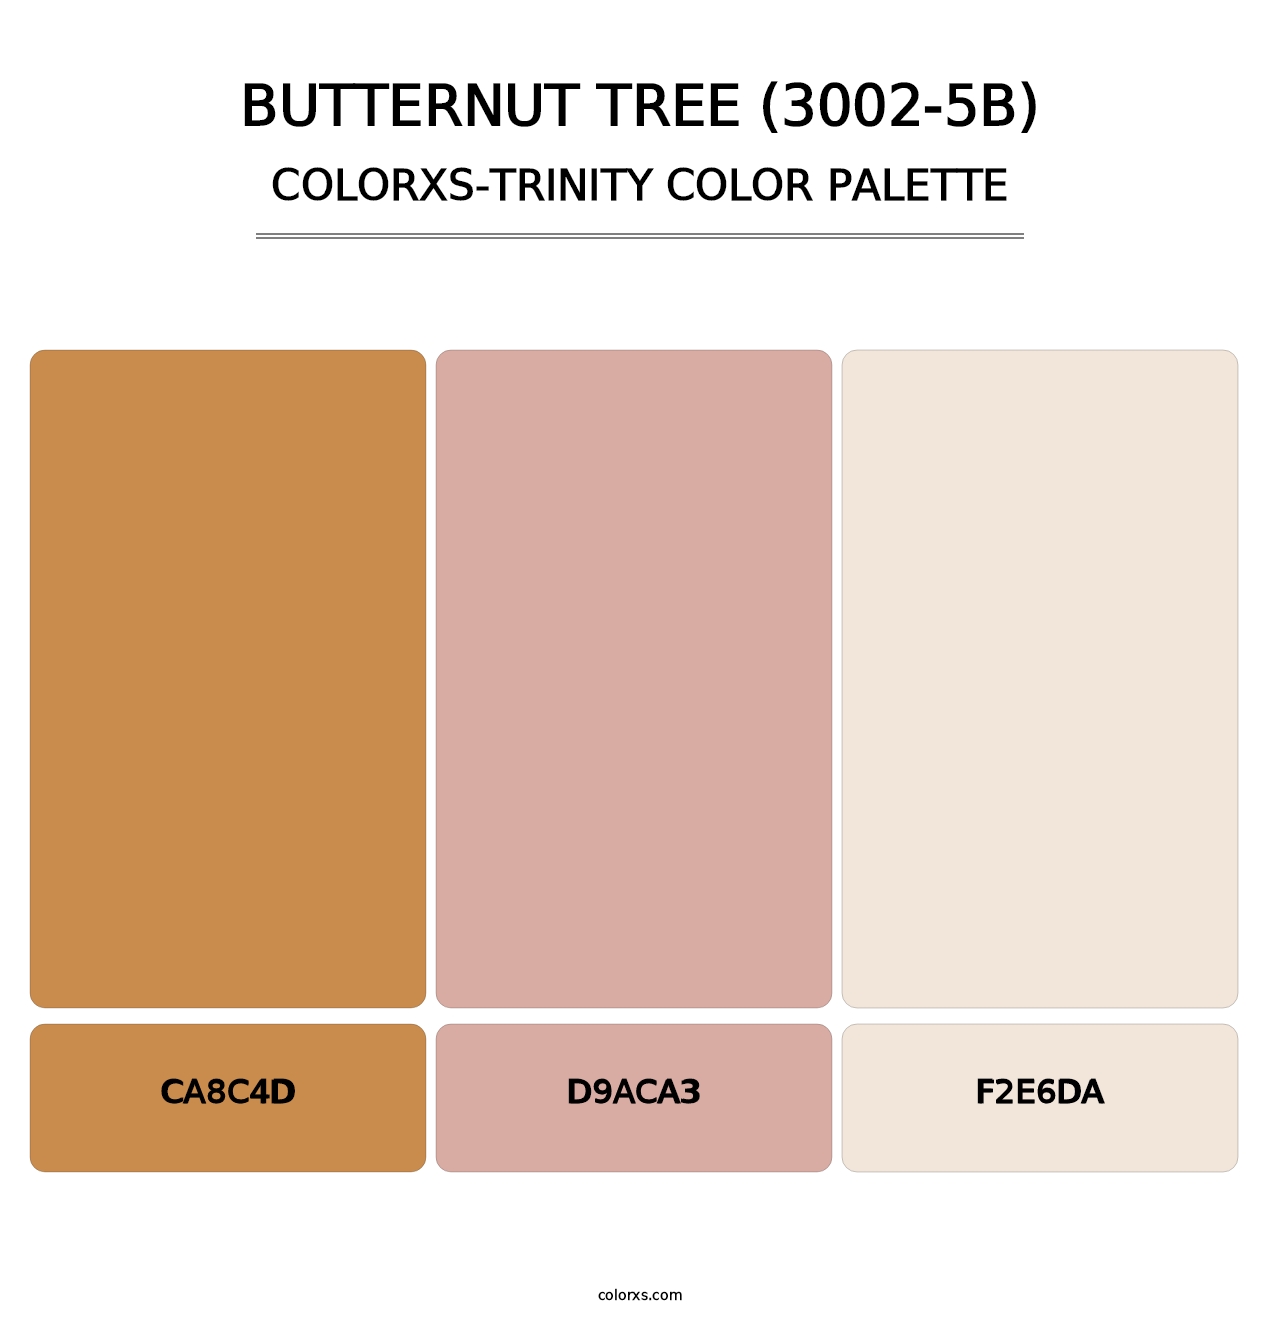 Butternut Tree (3002-5B) - Colorxs Trinity Palette